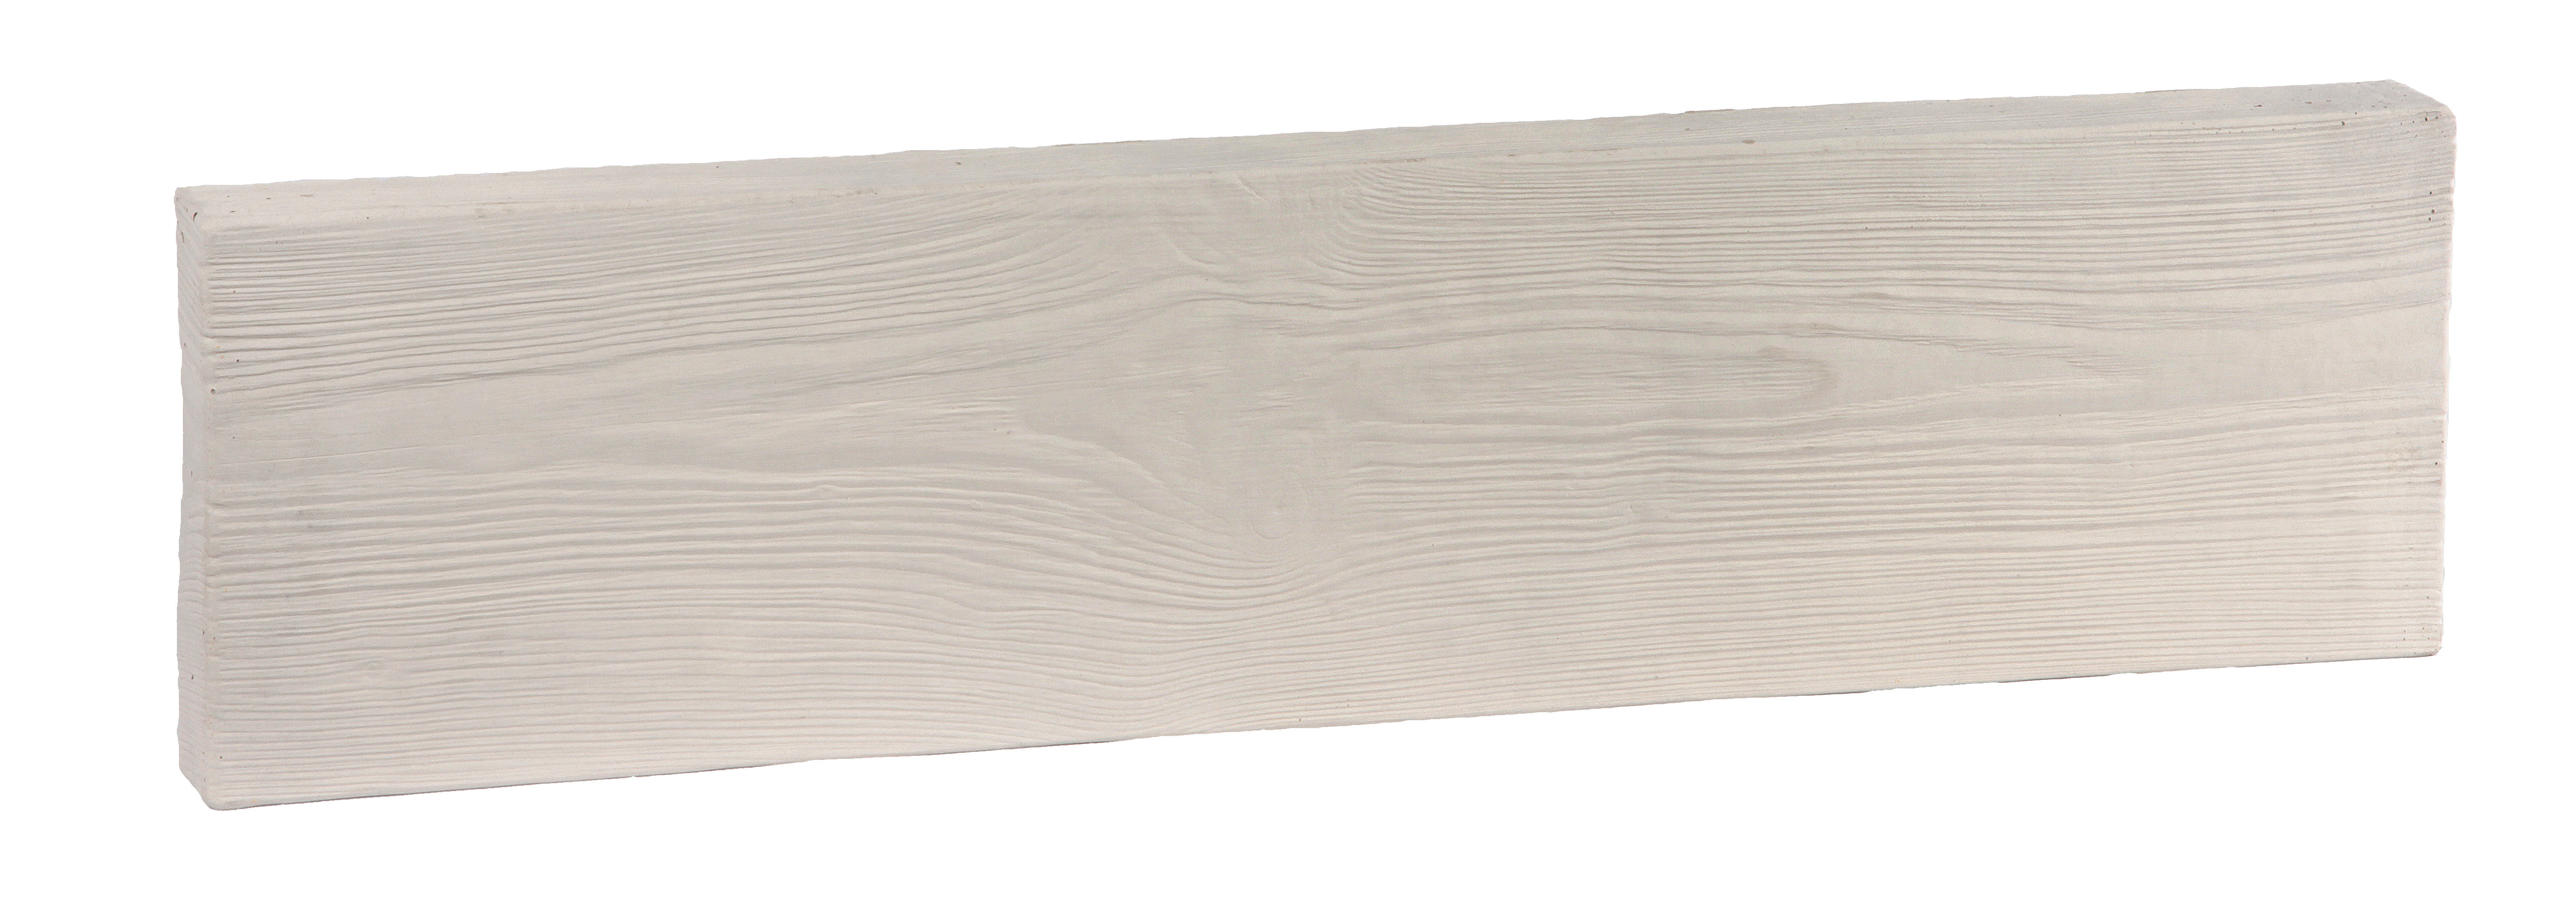 WESER Terrassenbohle Lignum 79,5x20x4/5 Holzstruktur, weiß